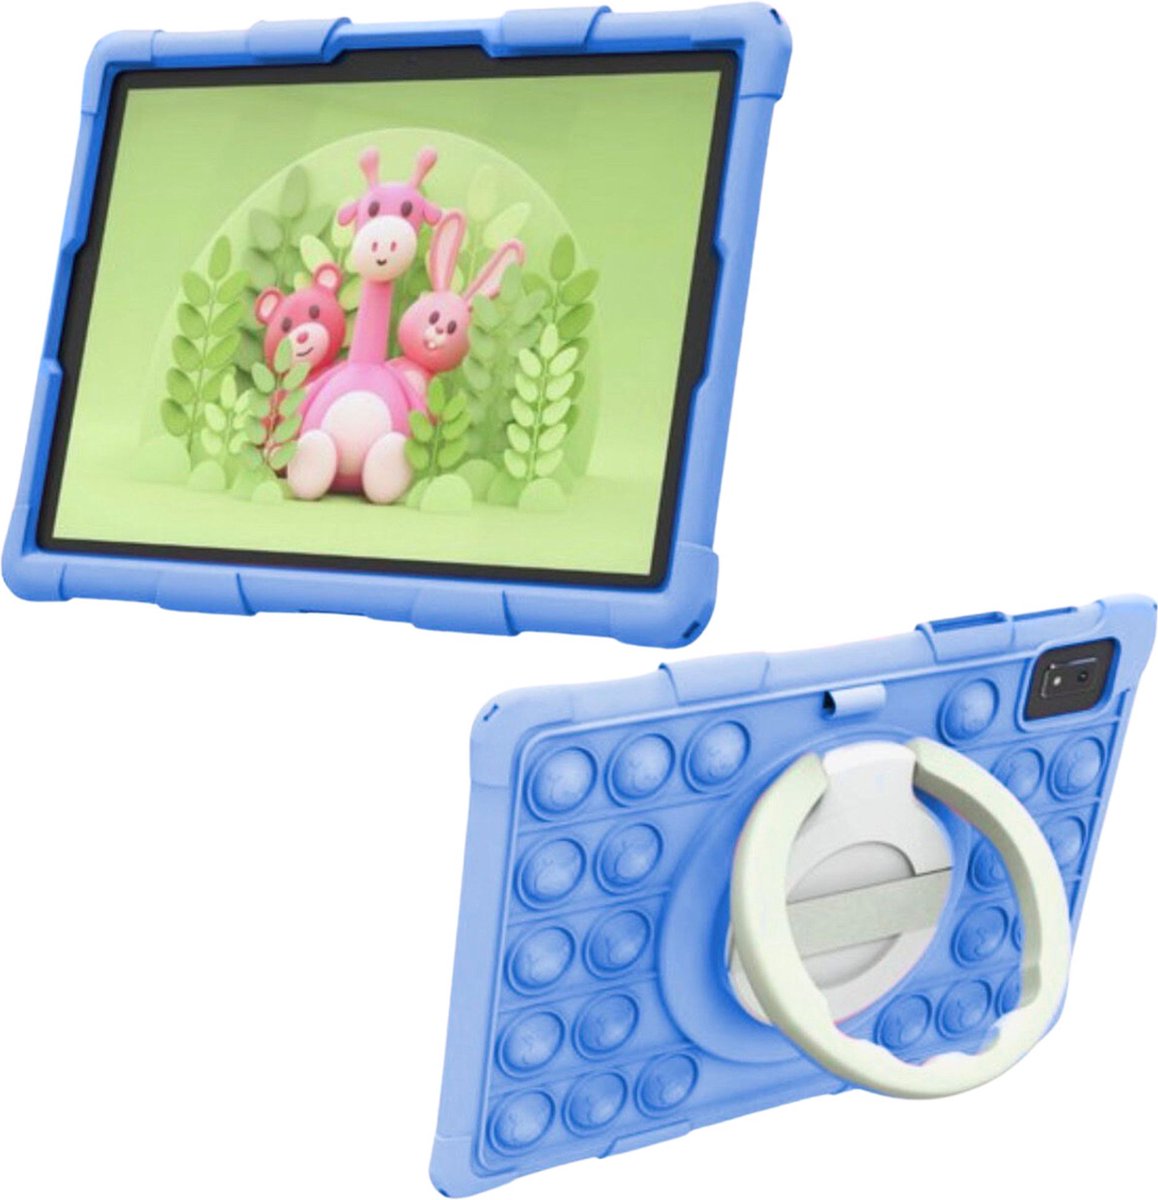 Rosentre Kinder Tablet - Blauwe Beschermhoes - 6000mAh Batterij | Ouderlijk Toezicht | Full HD Scherm | 10 inch Android Tablet | 6 GB Ram | 2.0GHz Processor